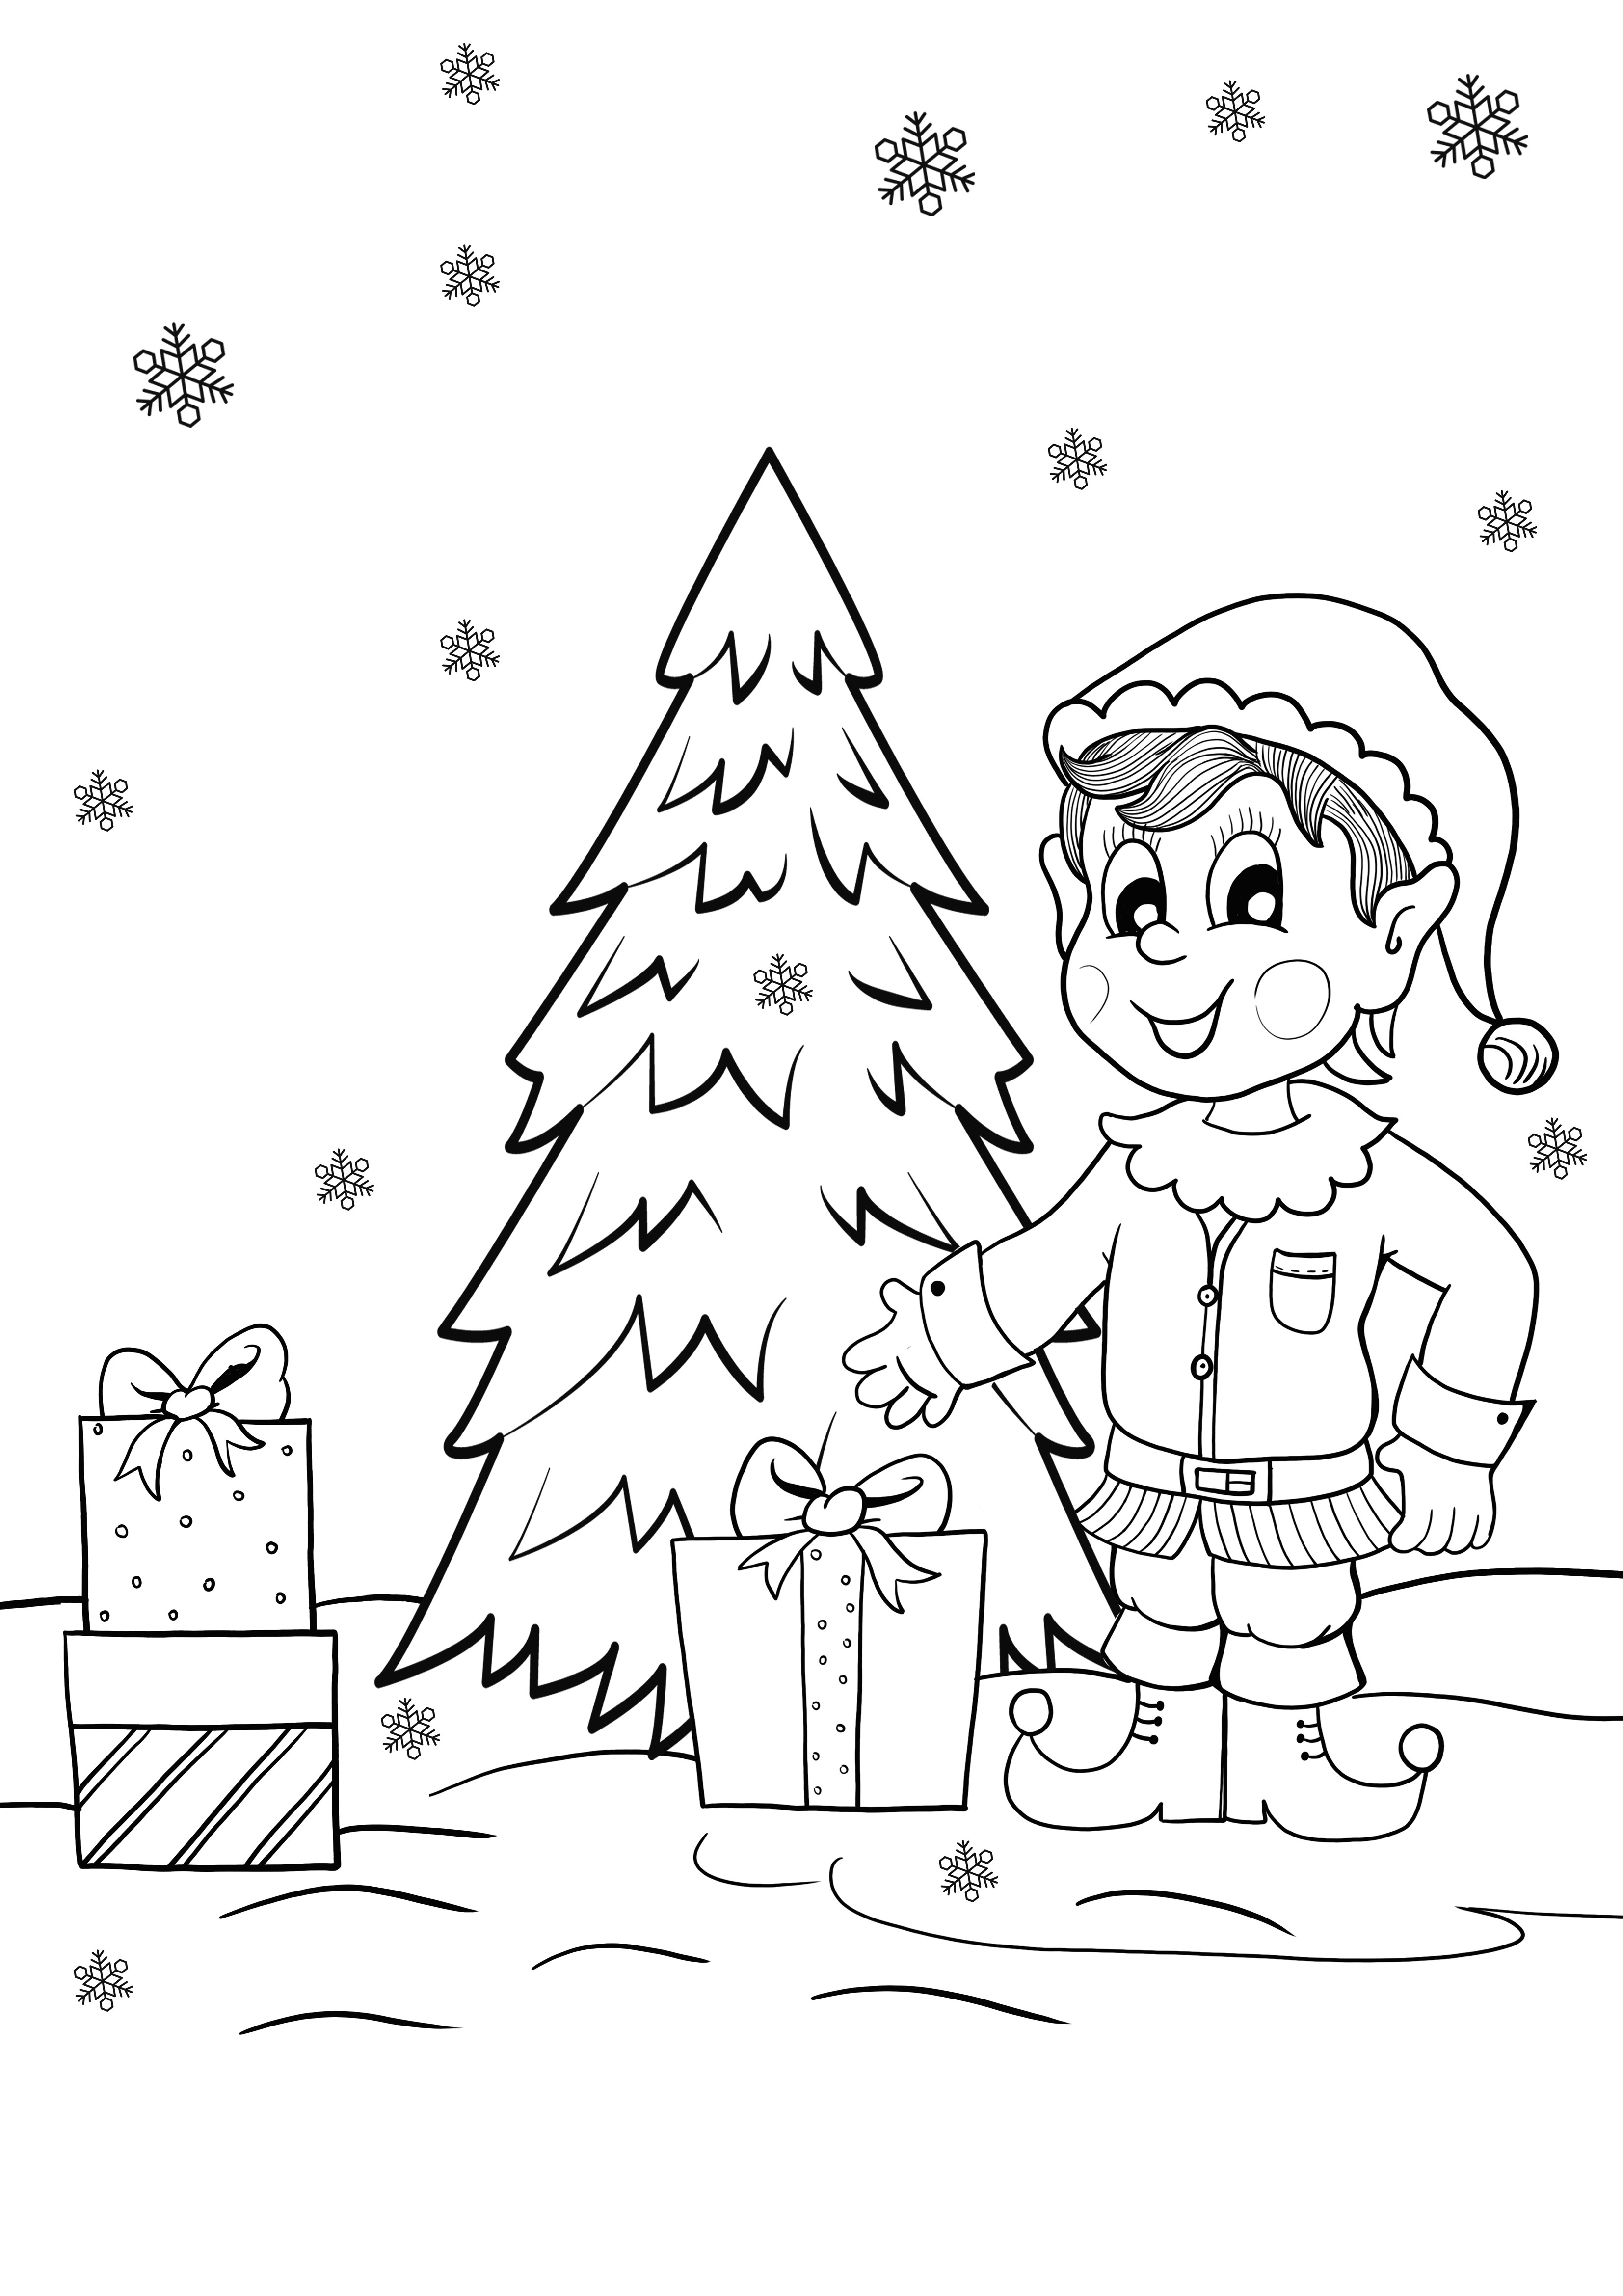 elf és karácsonyi ajándékok freebie színező oldal